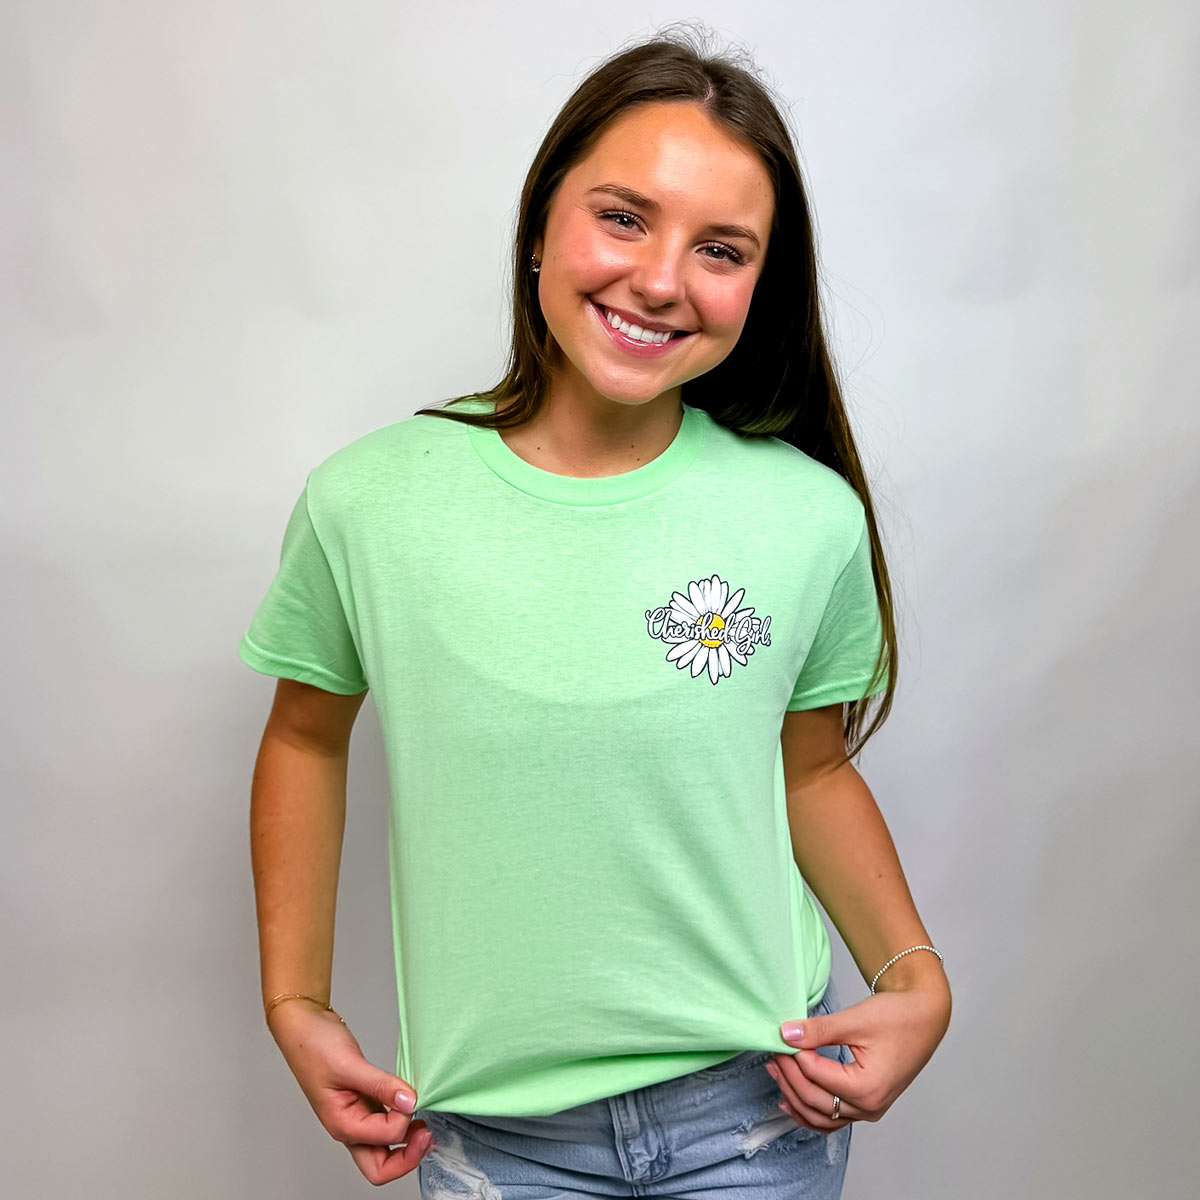 Cherished Girl Womens T-Shirt Wildflowers